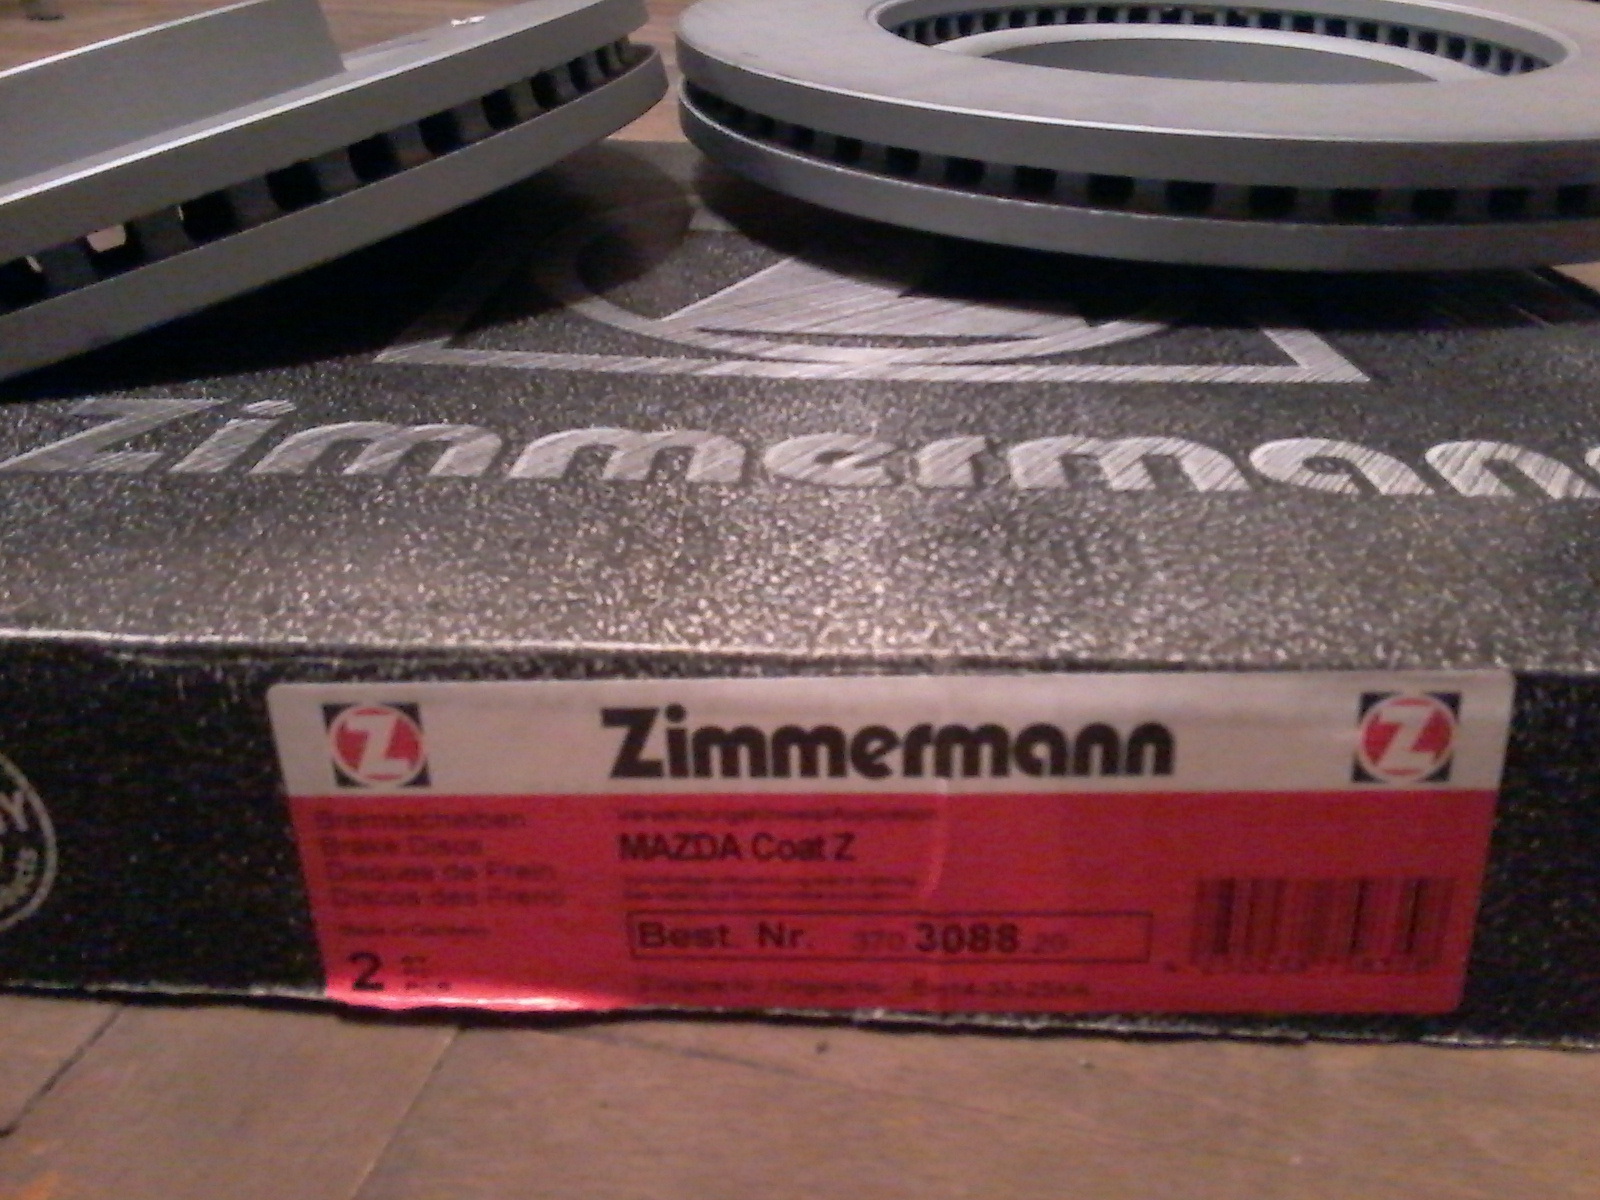    Zimmermann